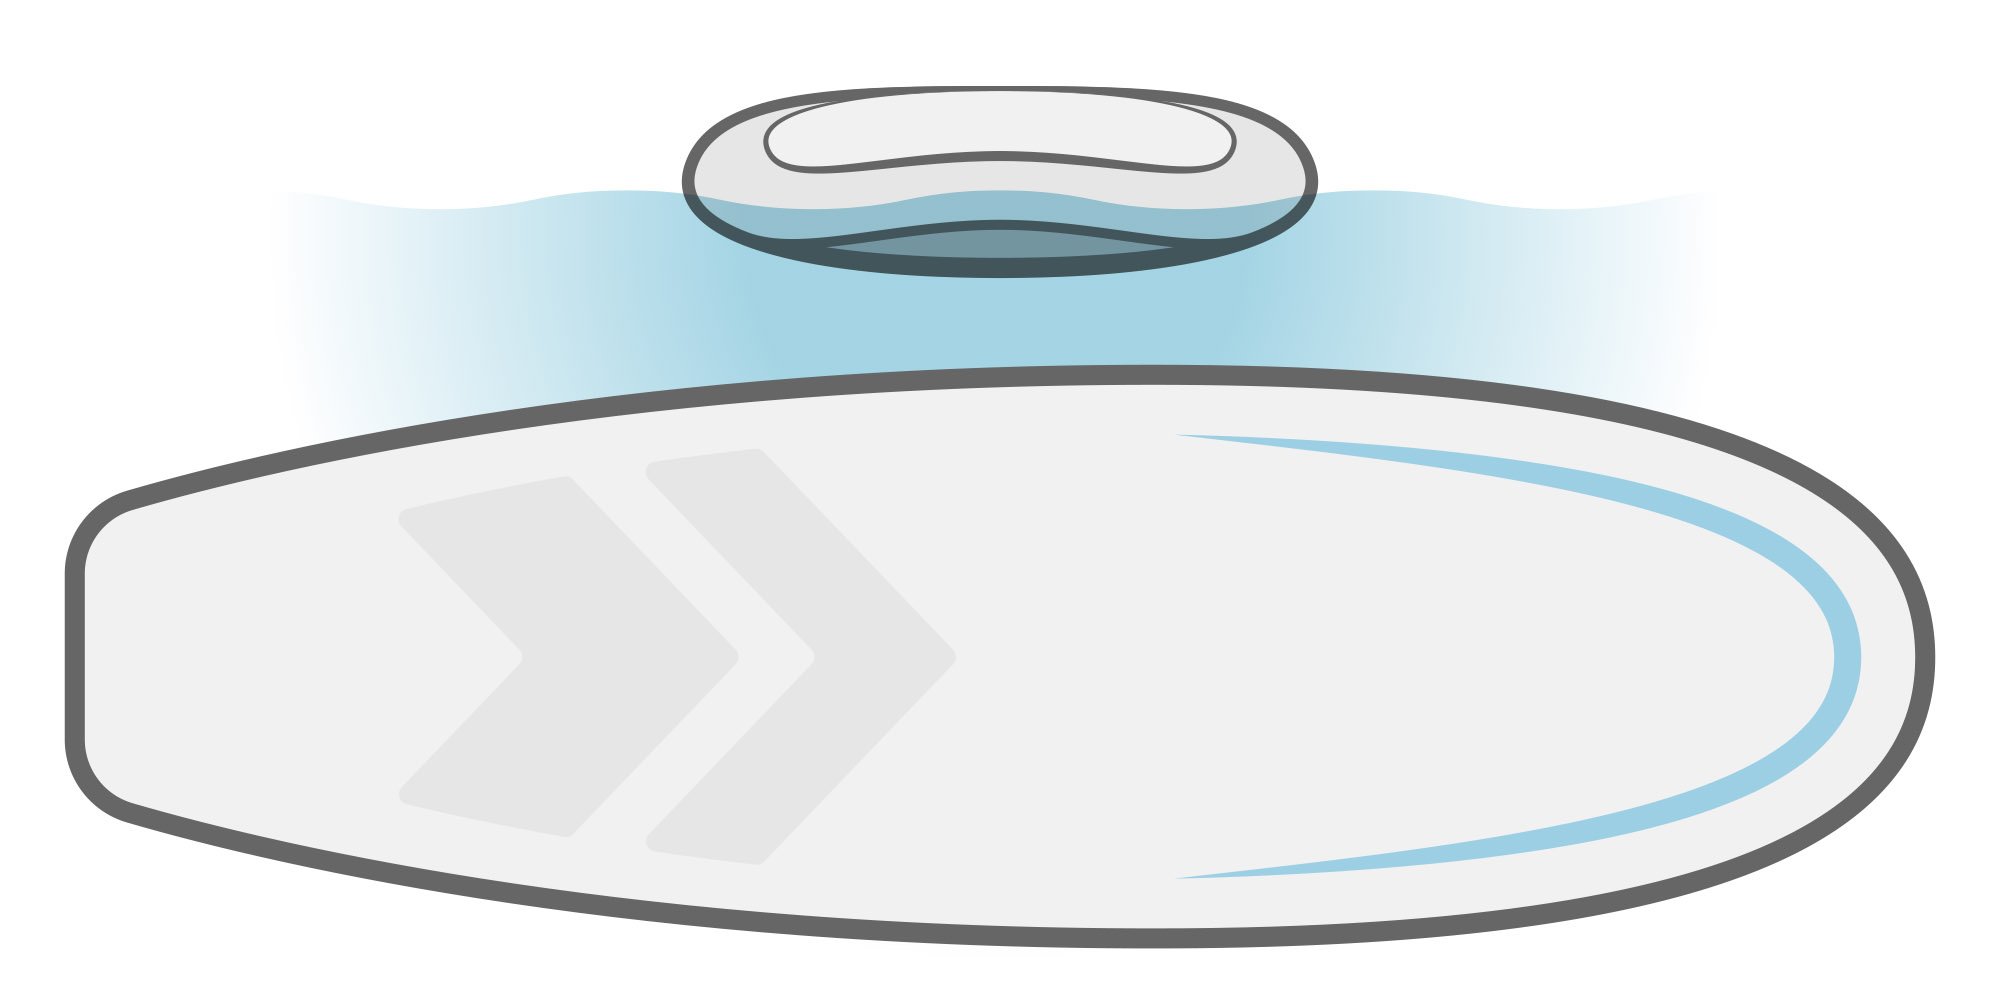 Ilustrație de paddleboard SUP cu carenă plană.